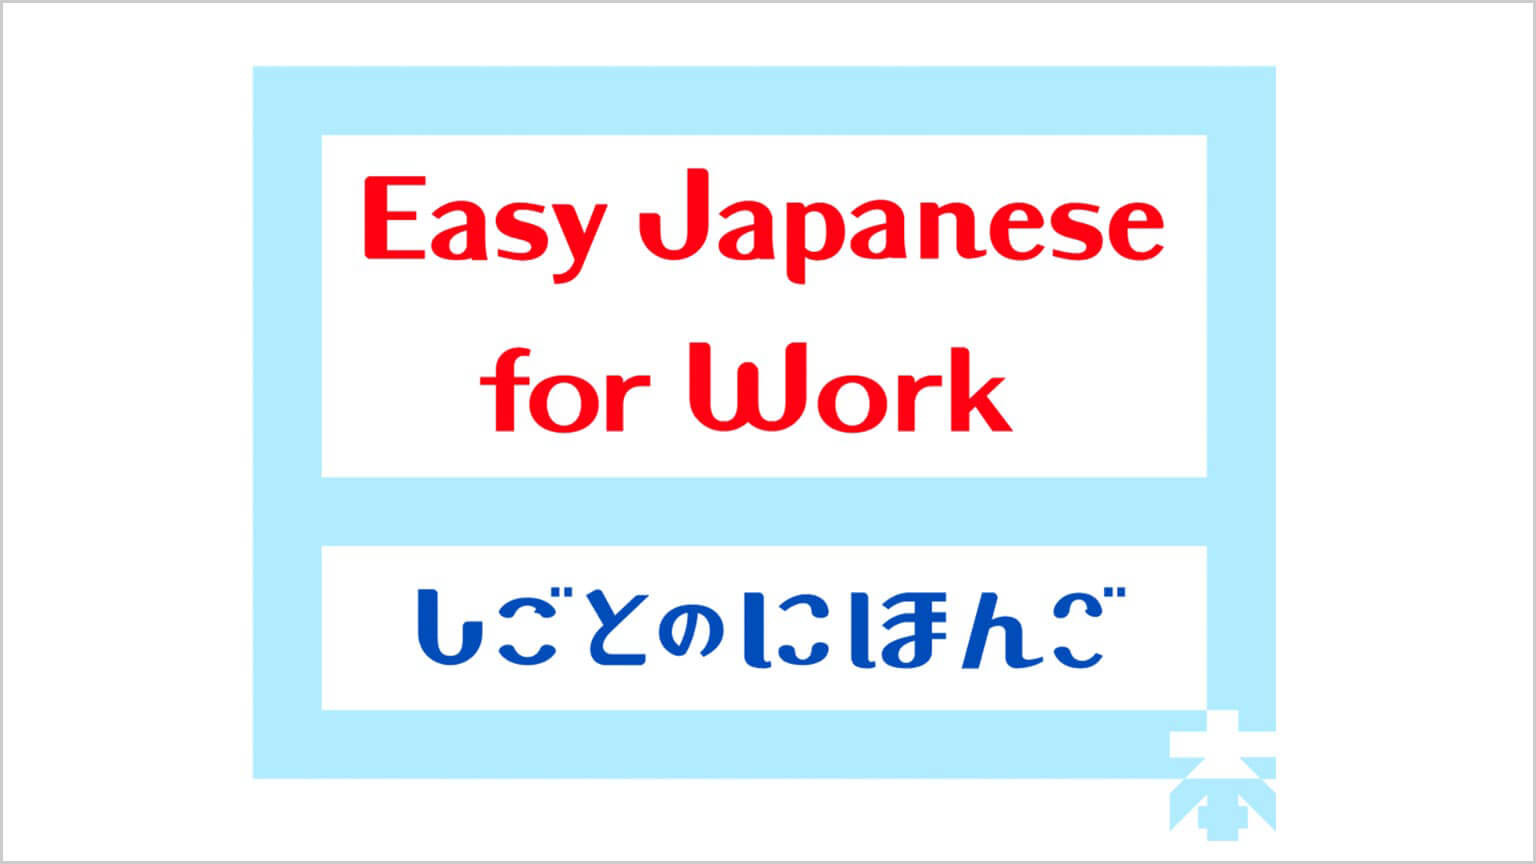 工作上的简明日语
Easy Japanese for Work